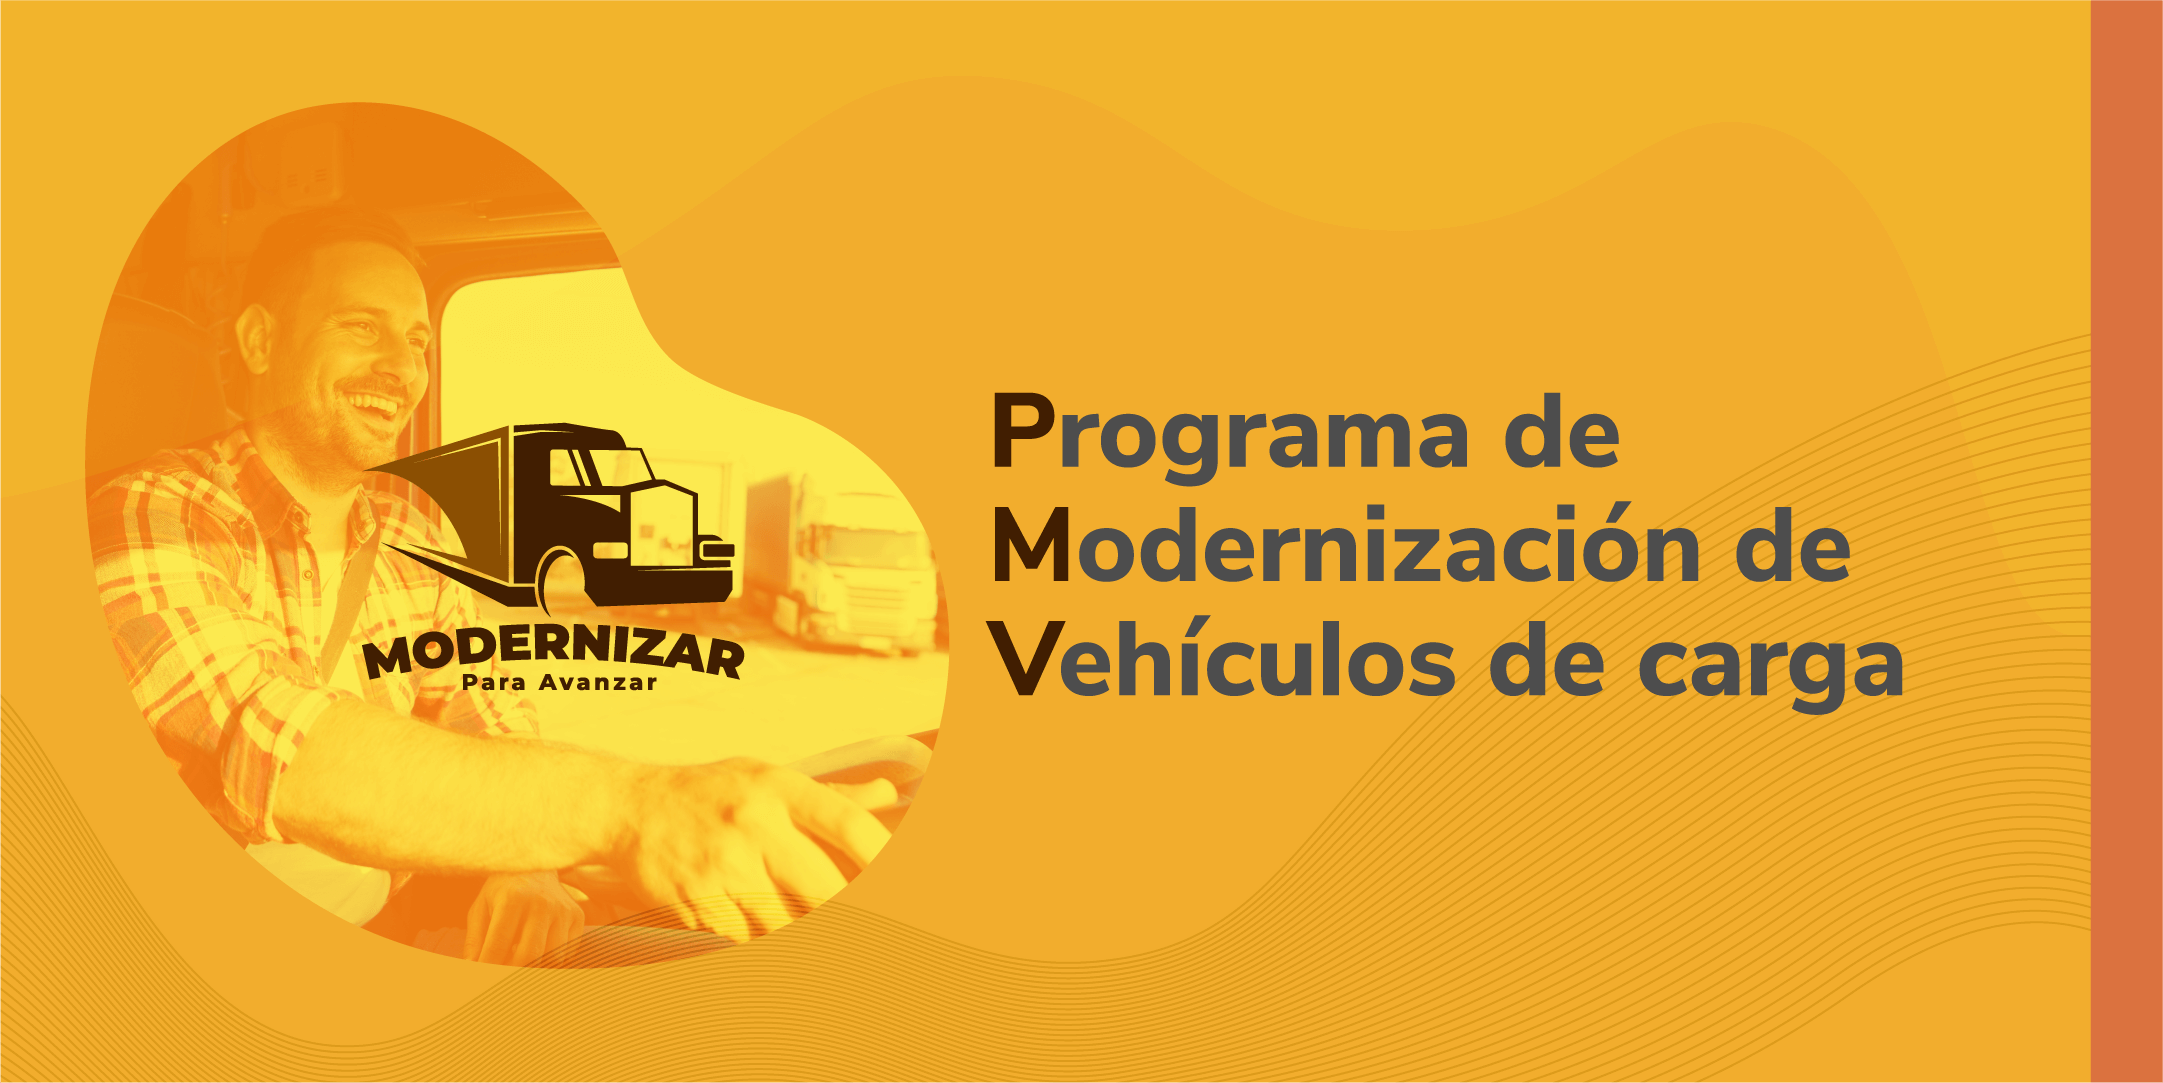 Programa de Modernización de vehículos de carga